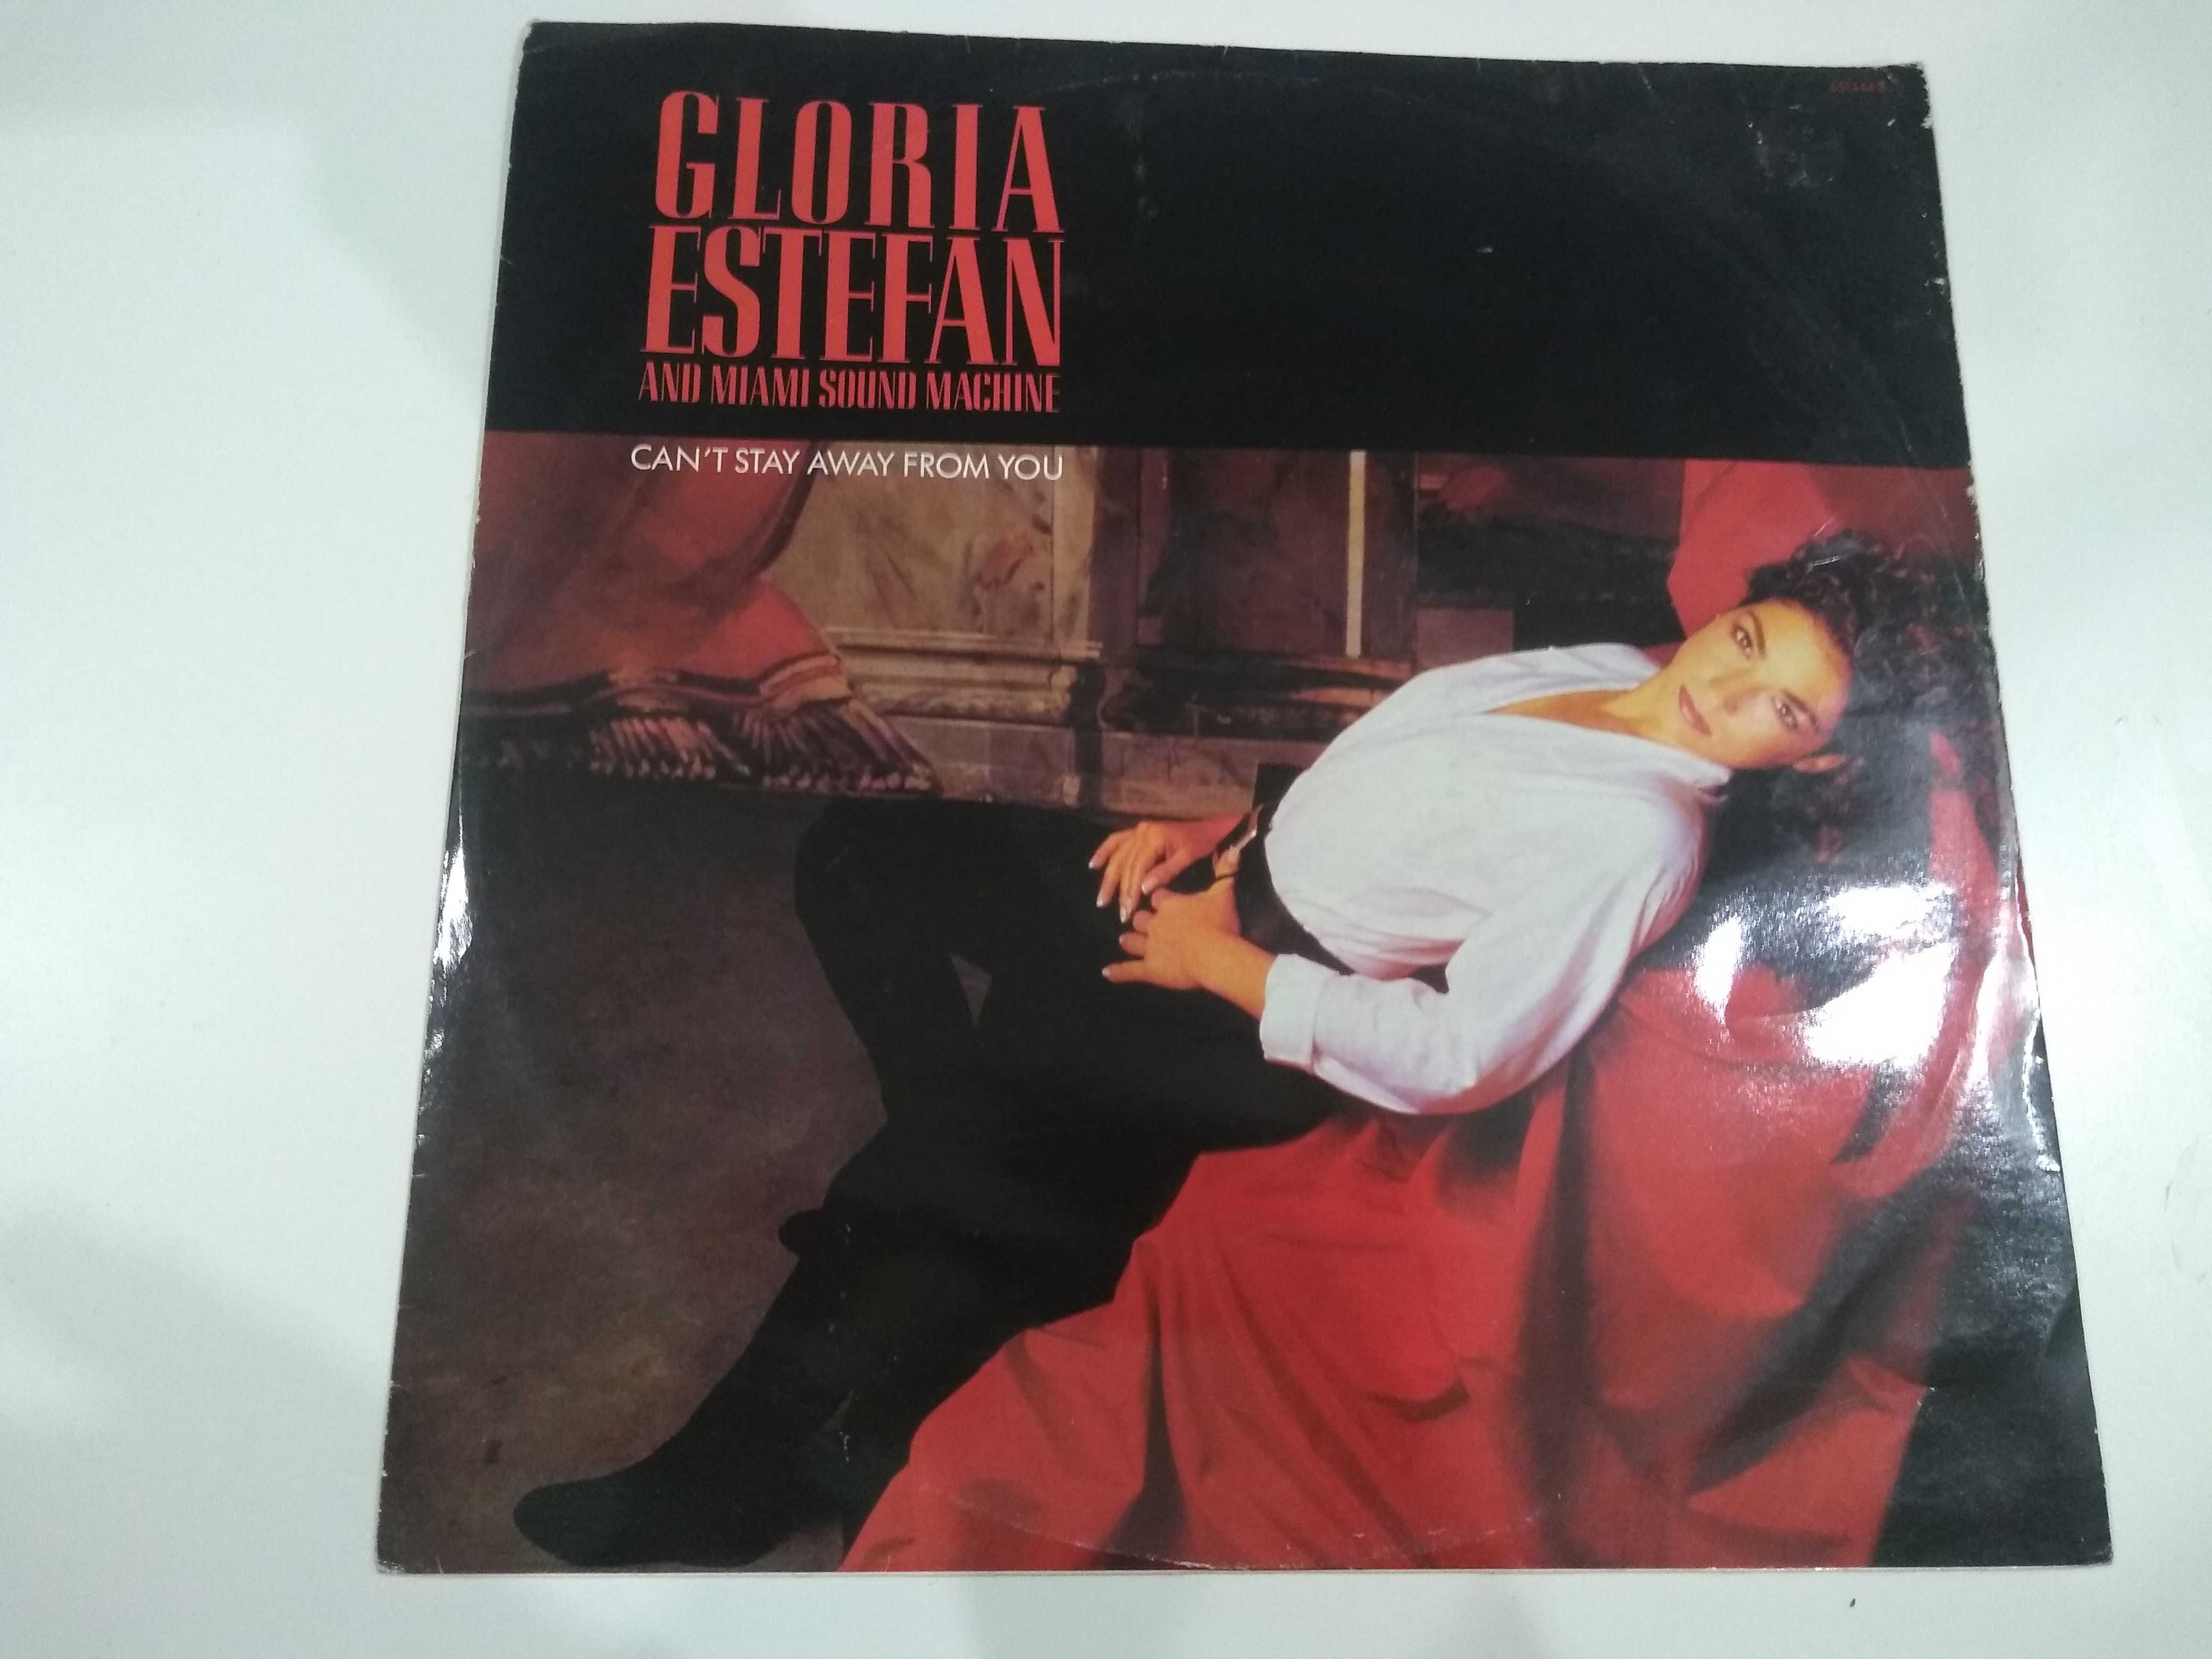 Dobra płyta - Gloria Estefan and miami sound machine